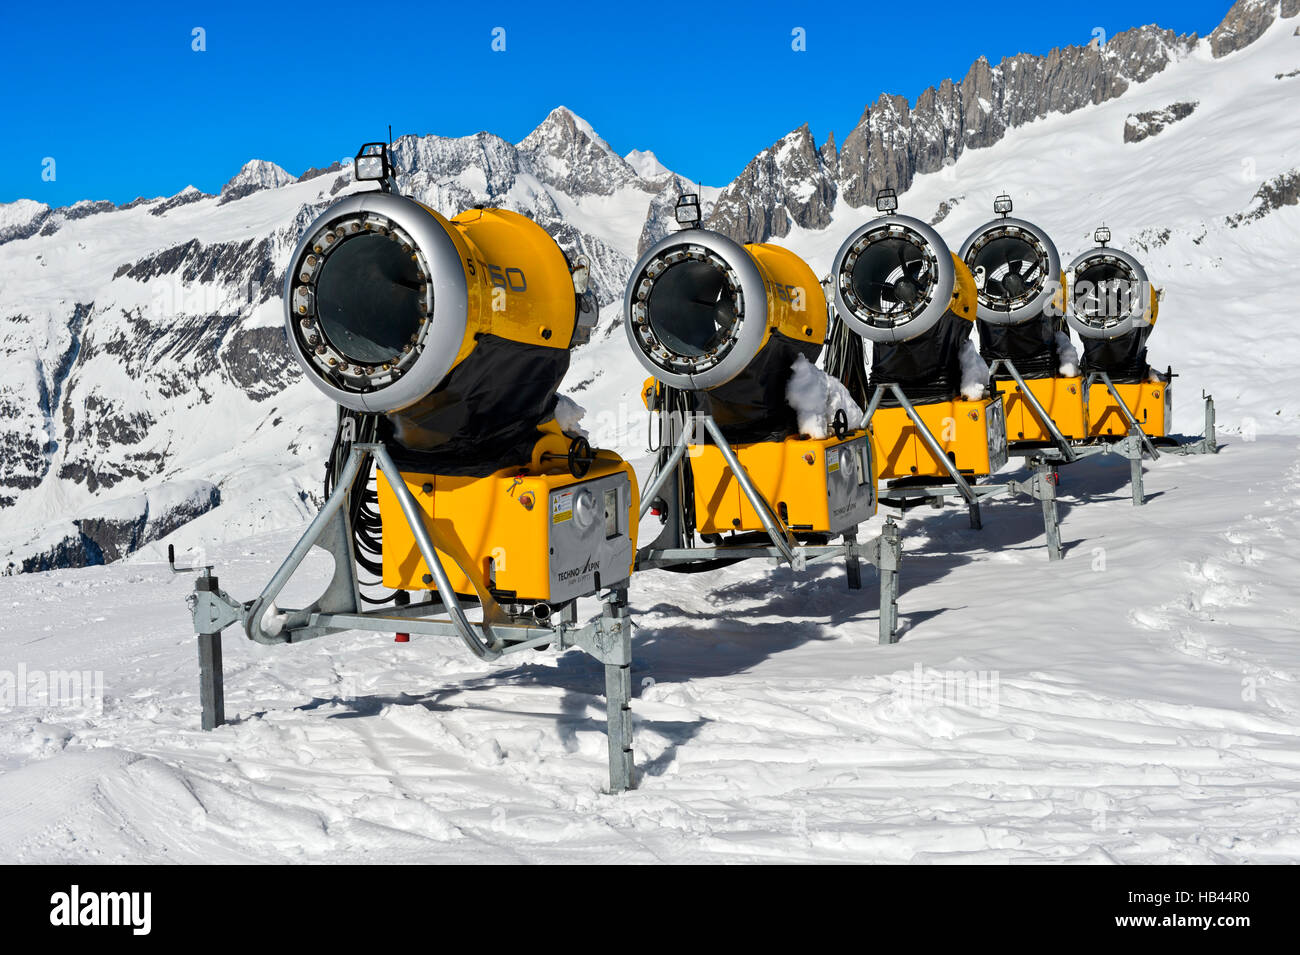 T60 TechnoAlpin snow cannons in the skiing area Aletscharena, Bettmeralp, Valais, Switzerland Stock Photo